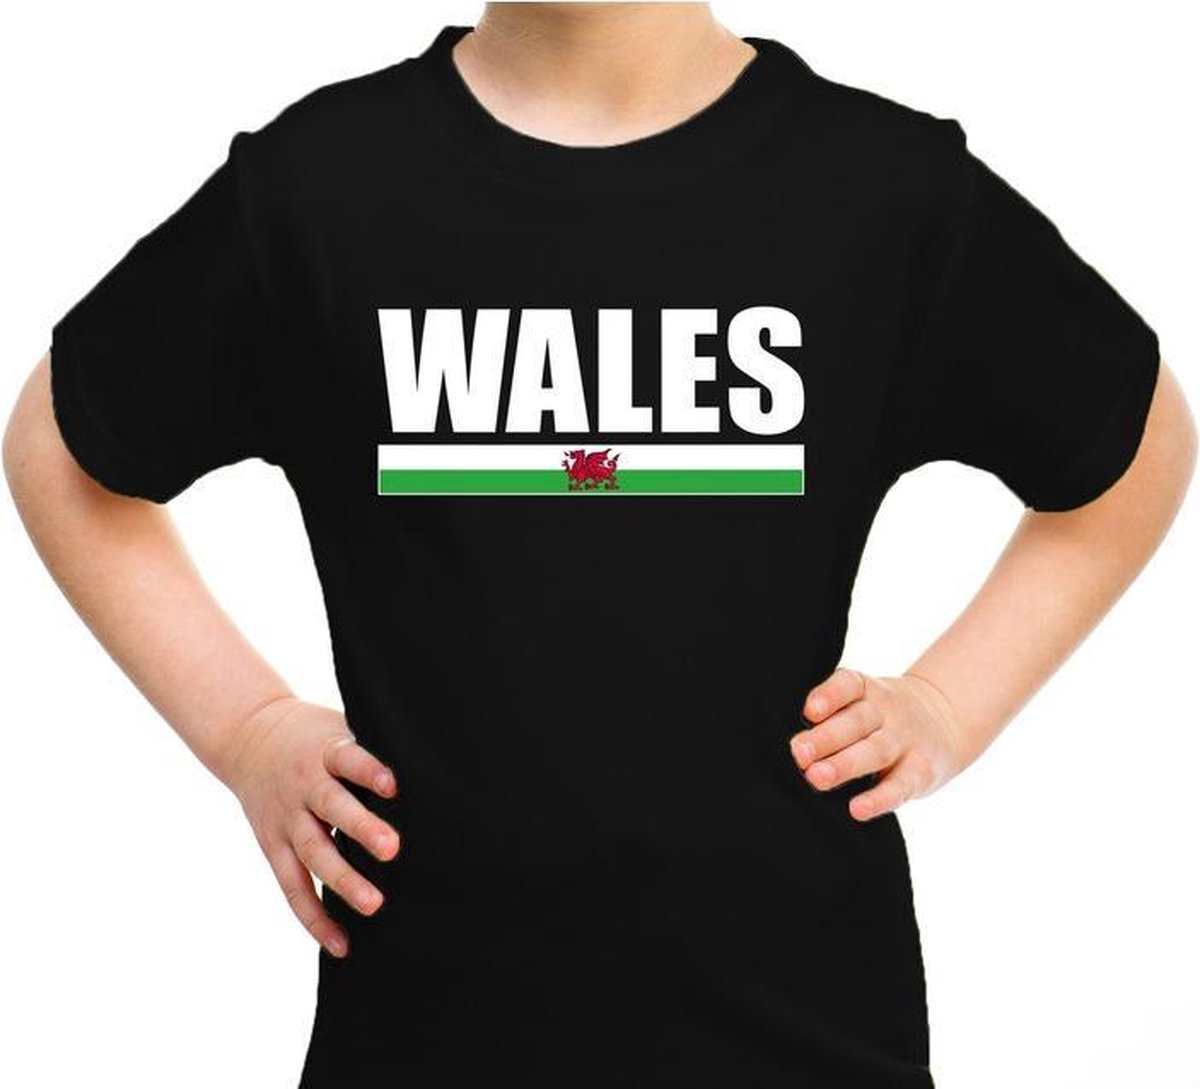 Afbeelding van product Bellatio Decorations  Wales supporter t-shirt zwart voor kids - Verenigd Koninkrijk landen shirt - UK supporters kleding 110/116  - maat 110/116